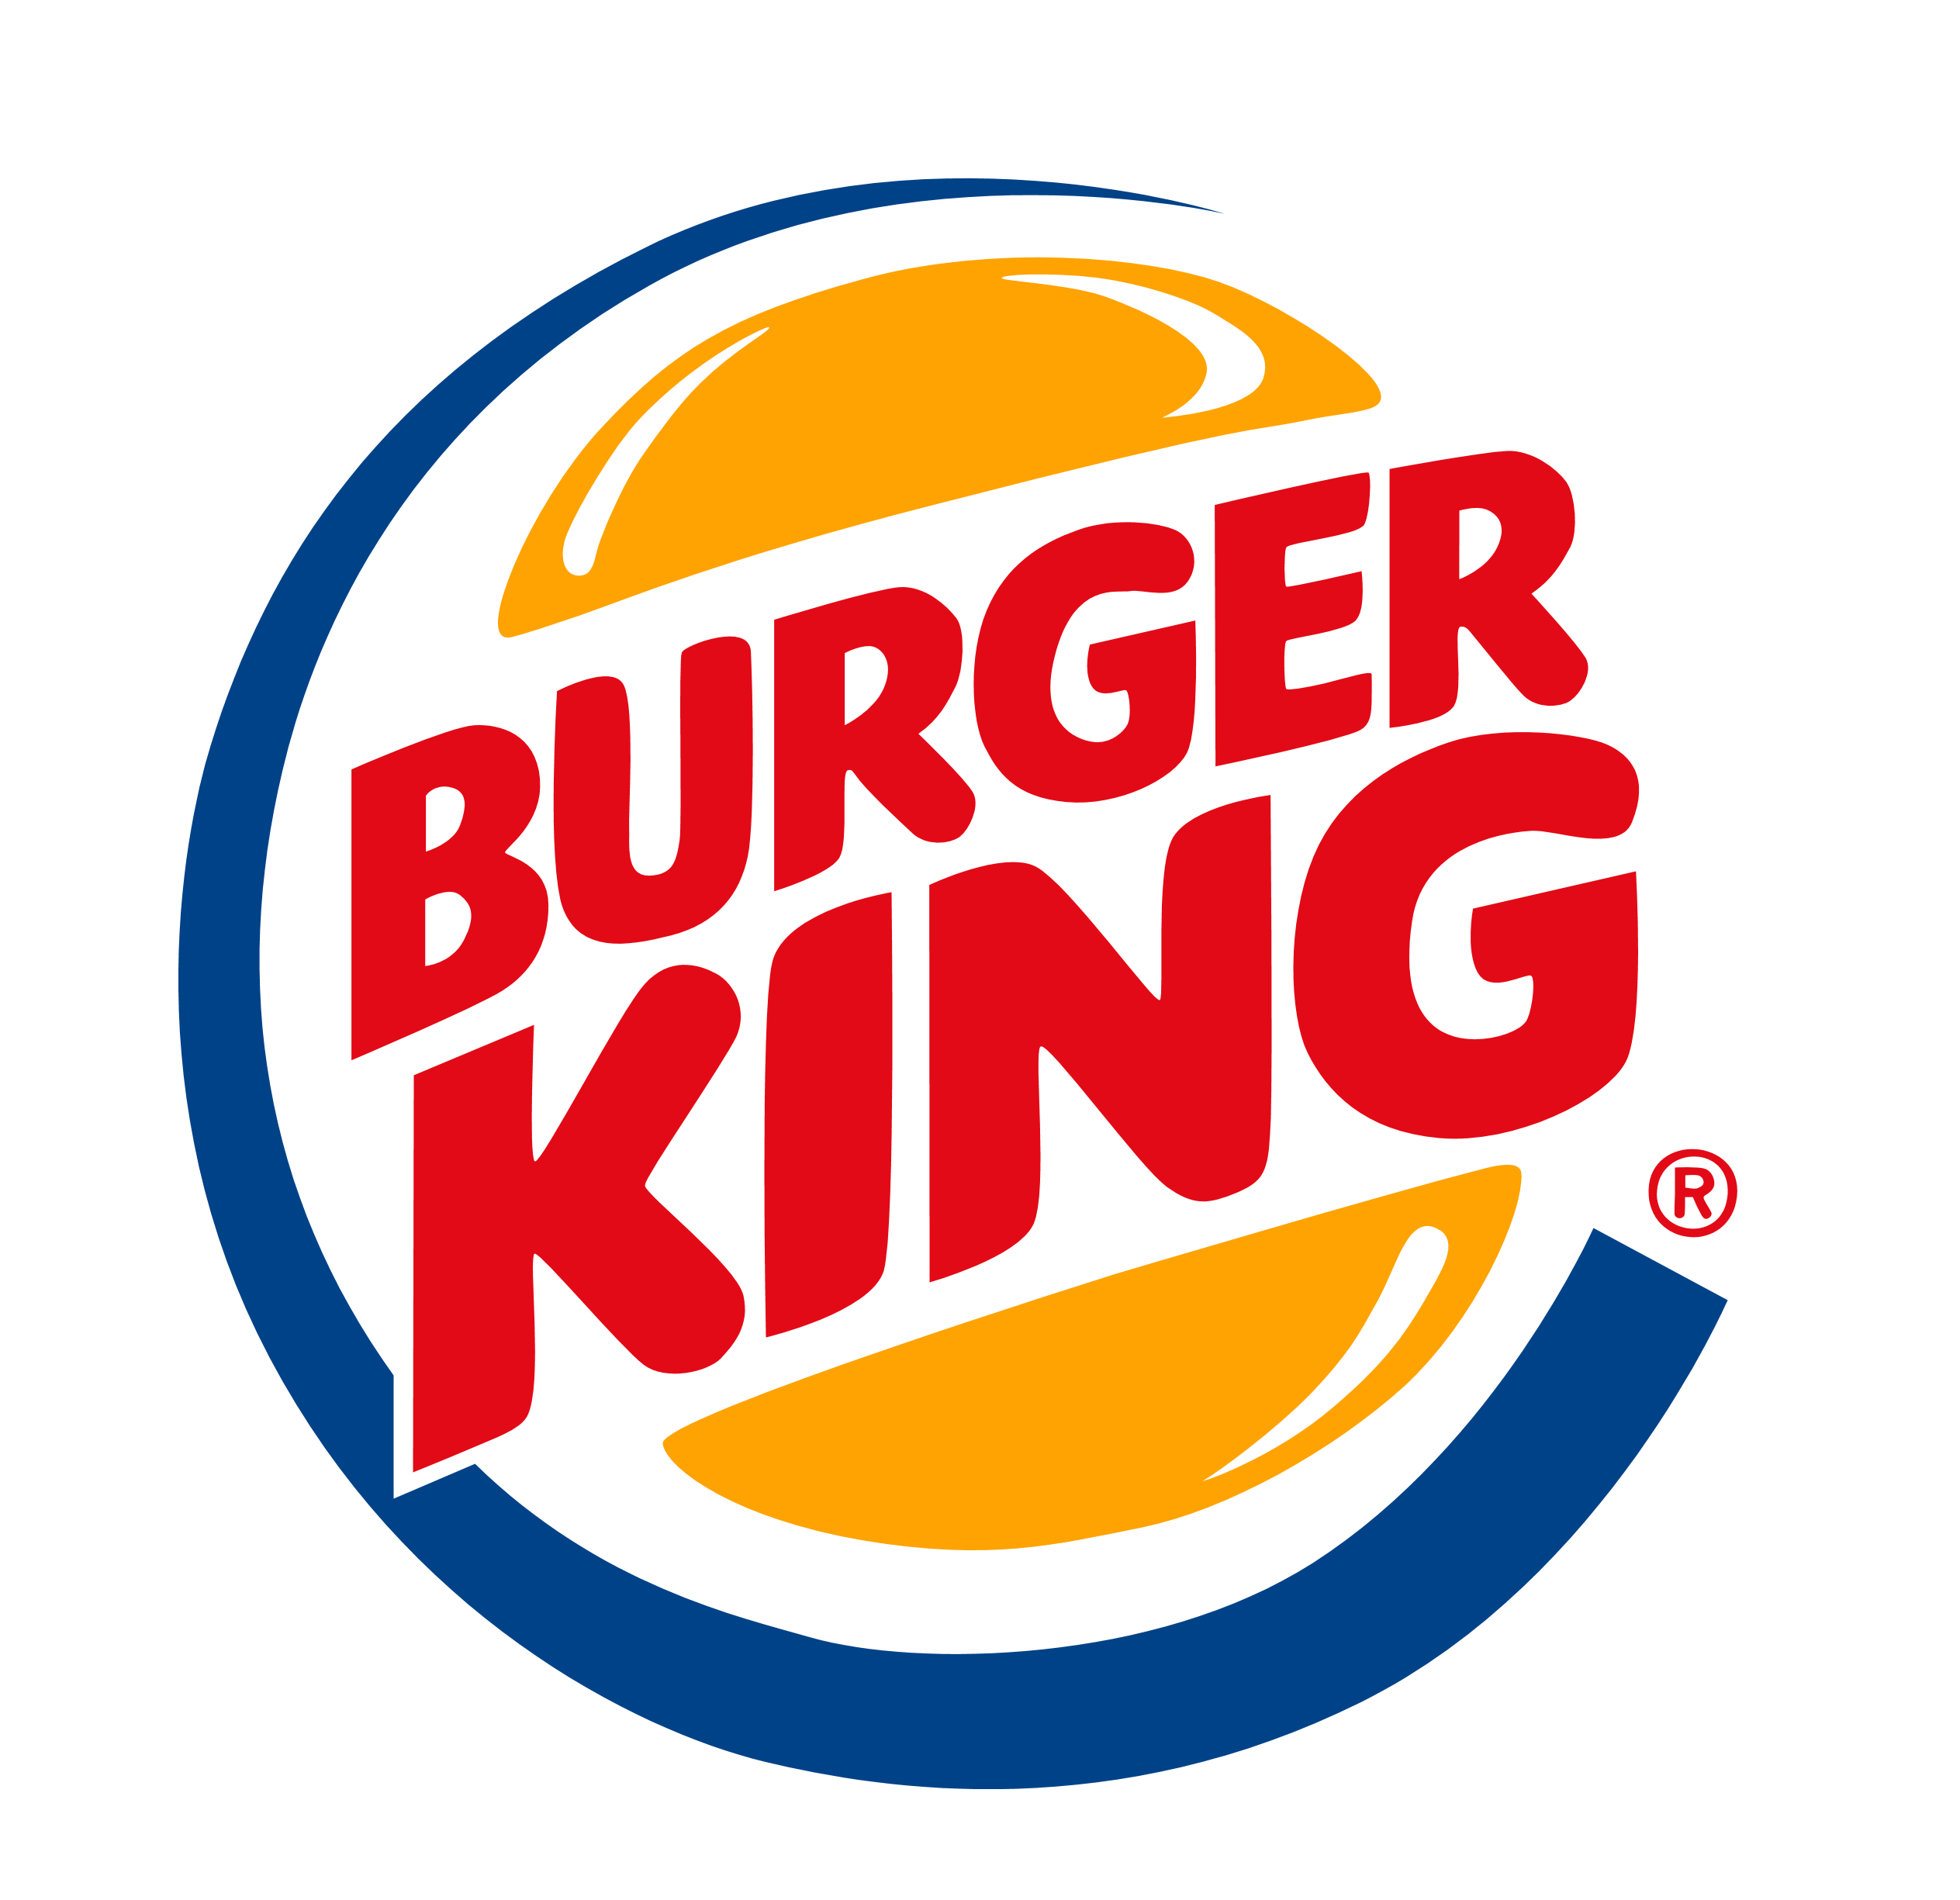 logos, Burger King - desktop wallpaper